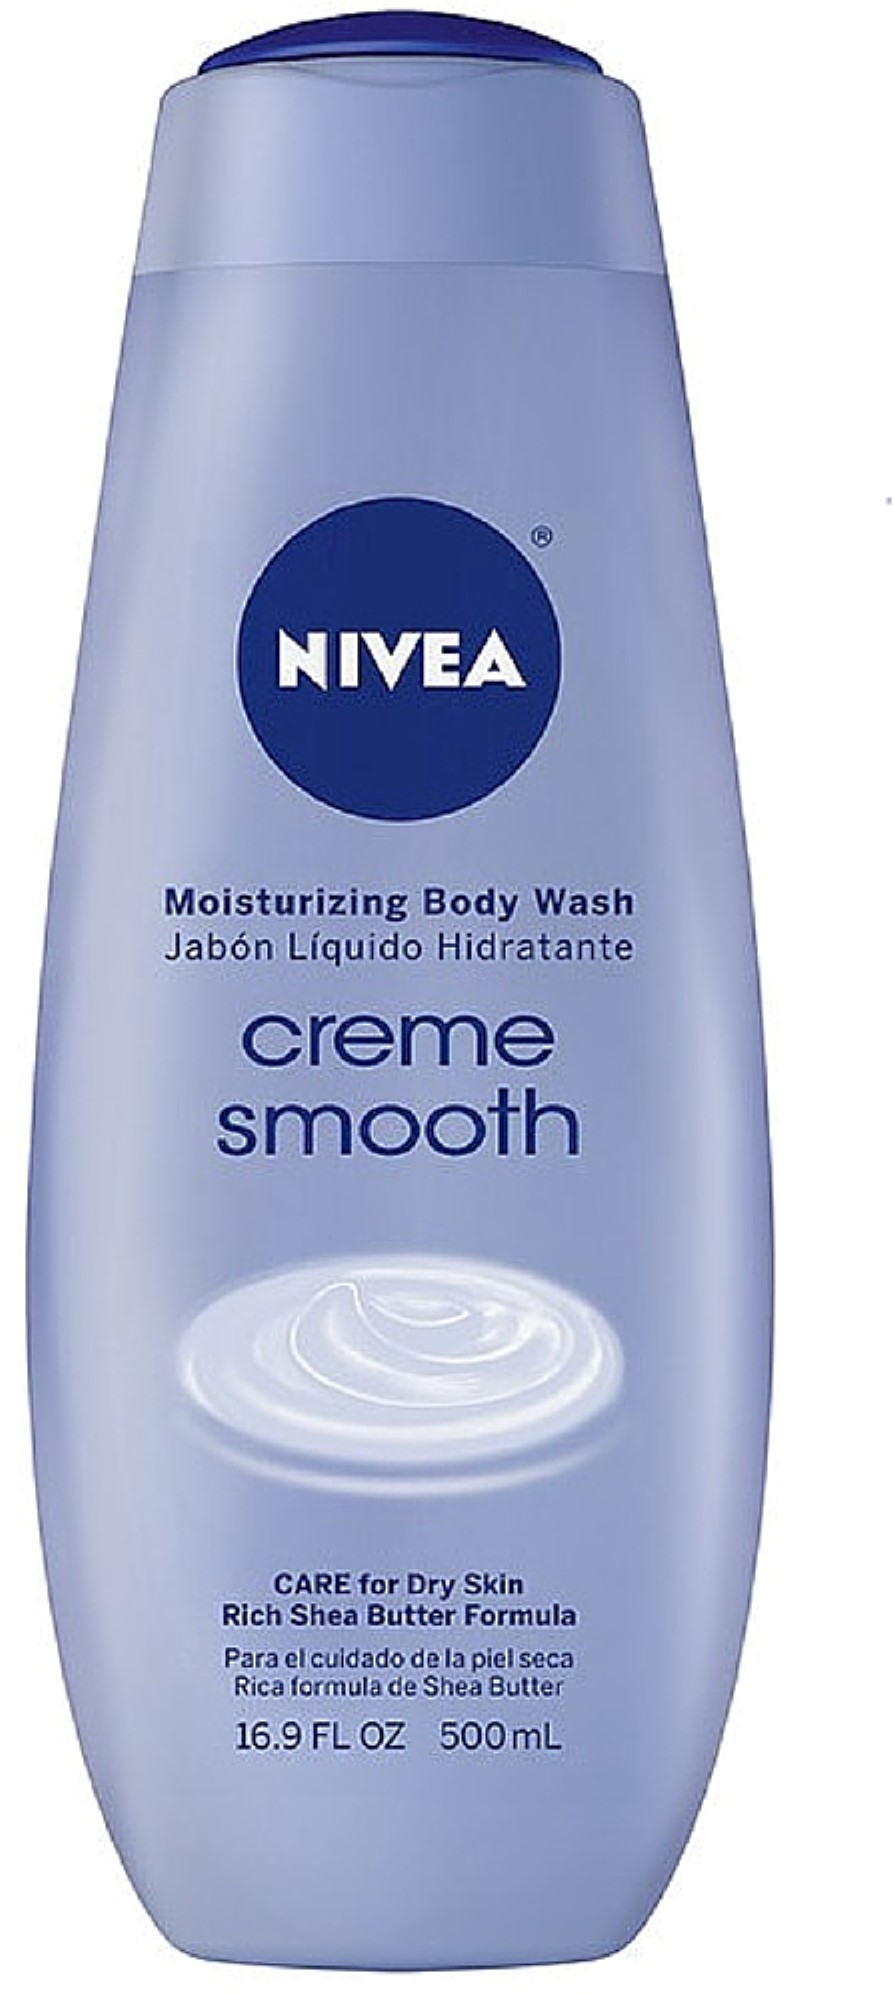 NIVEA Moisturizing Body Wash, Creme Smooth 16.90 oz - image 1 of 2